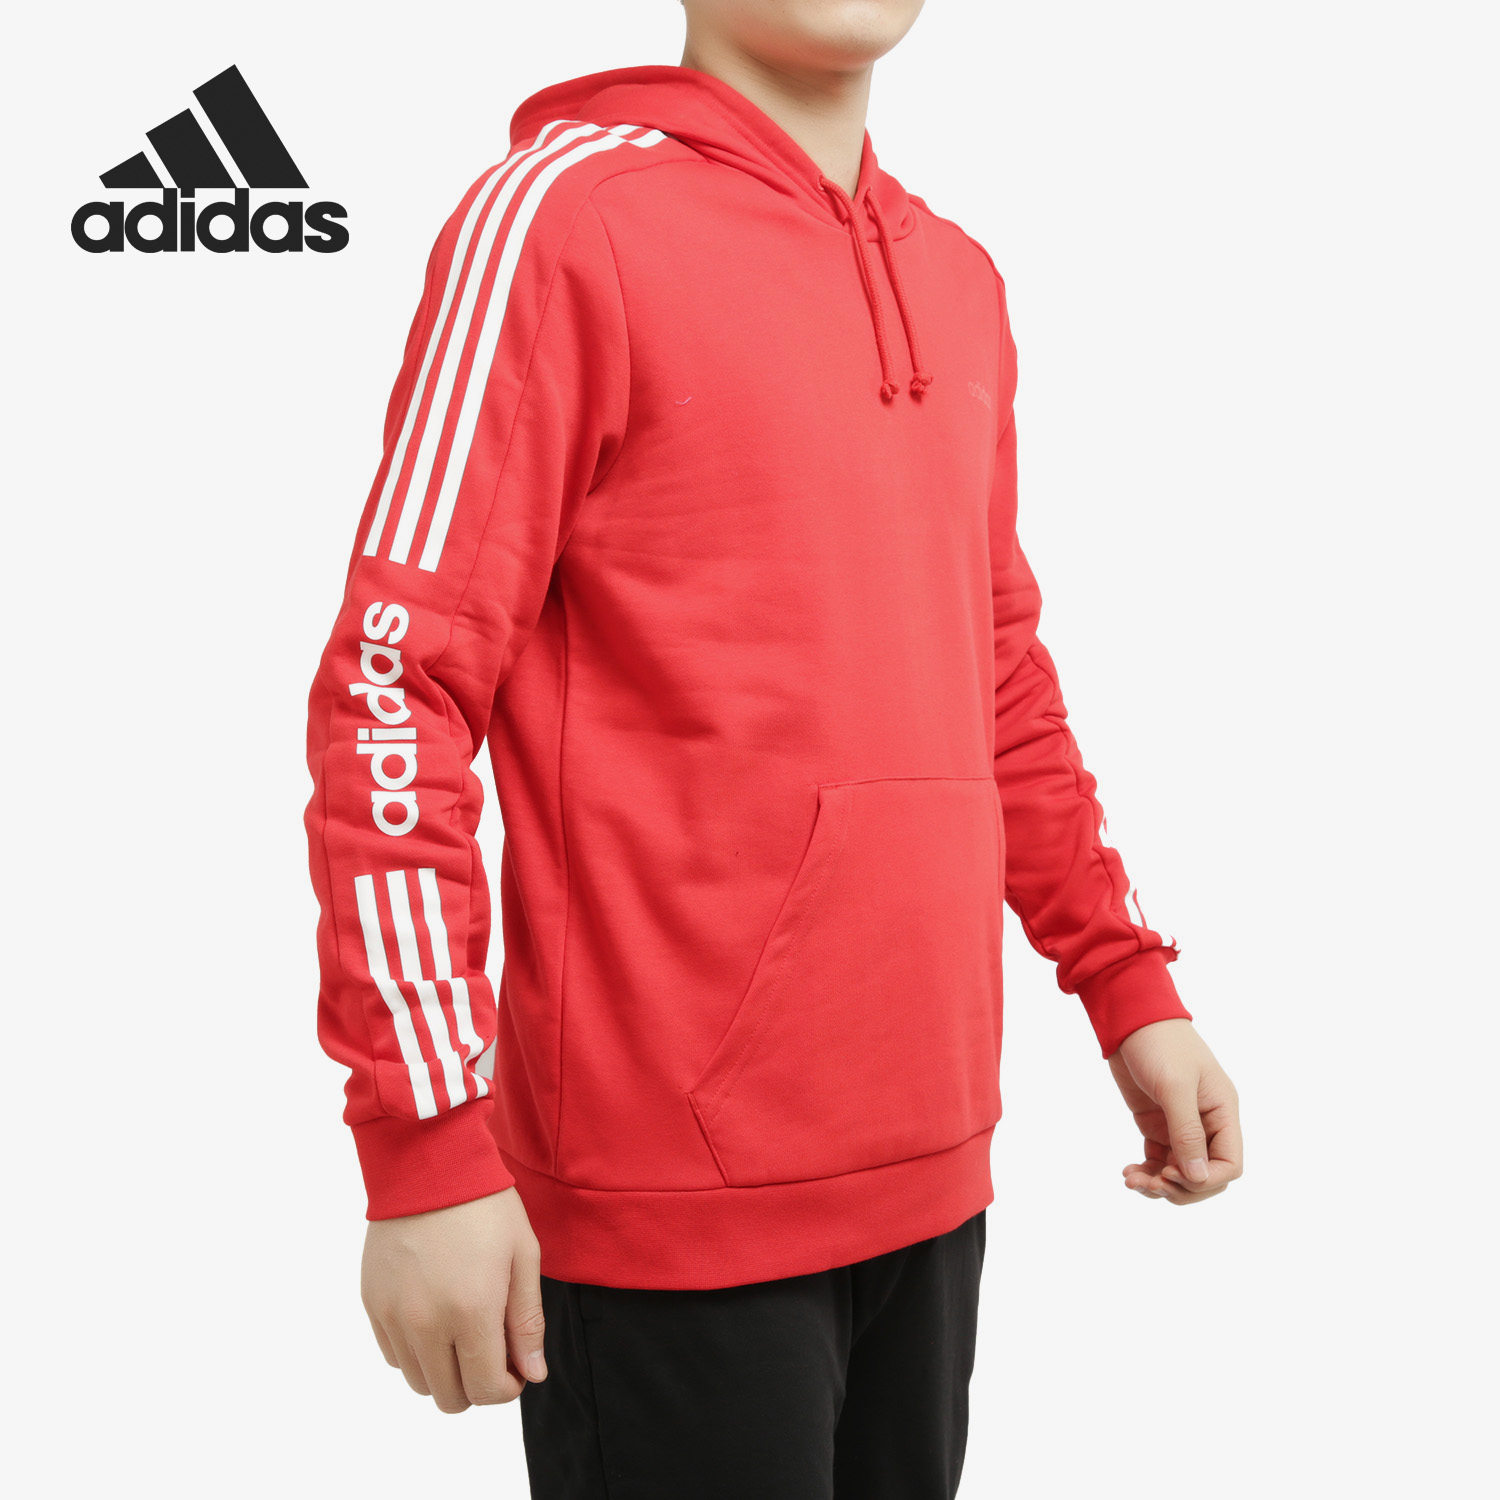 Adidas/阿迪达斯正品2020年春季新款男子休闲运动连帽卫衣FU1070